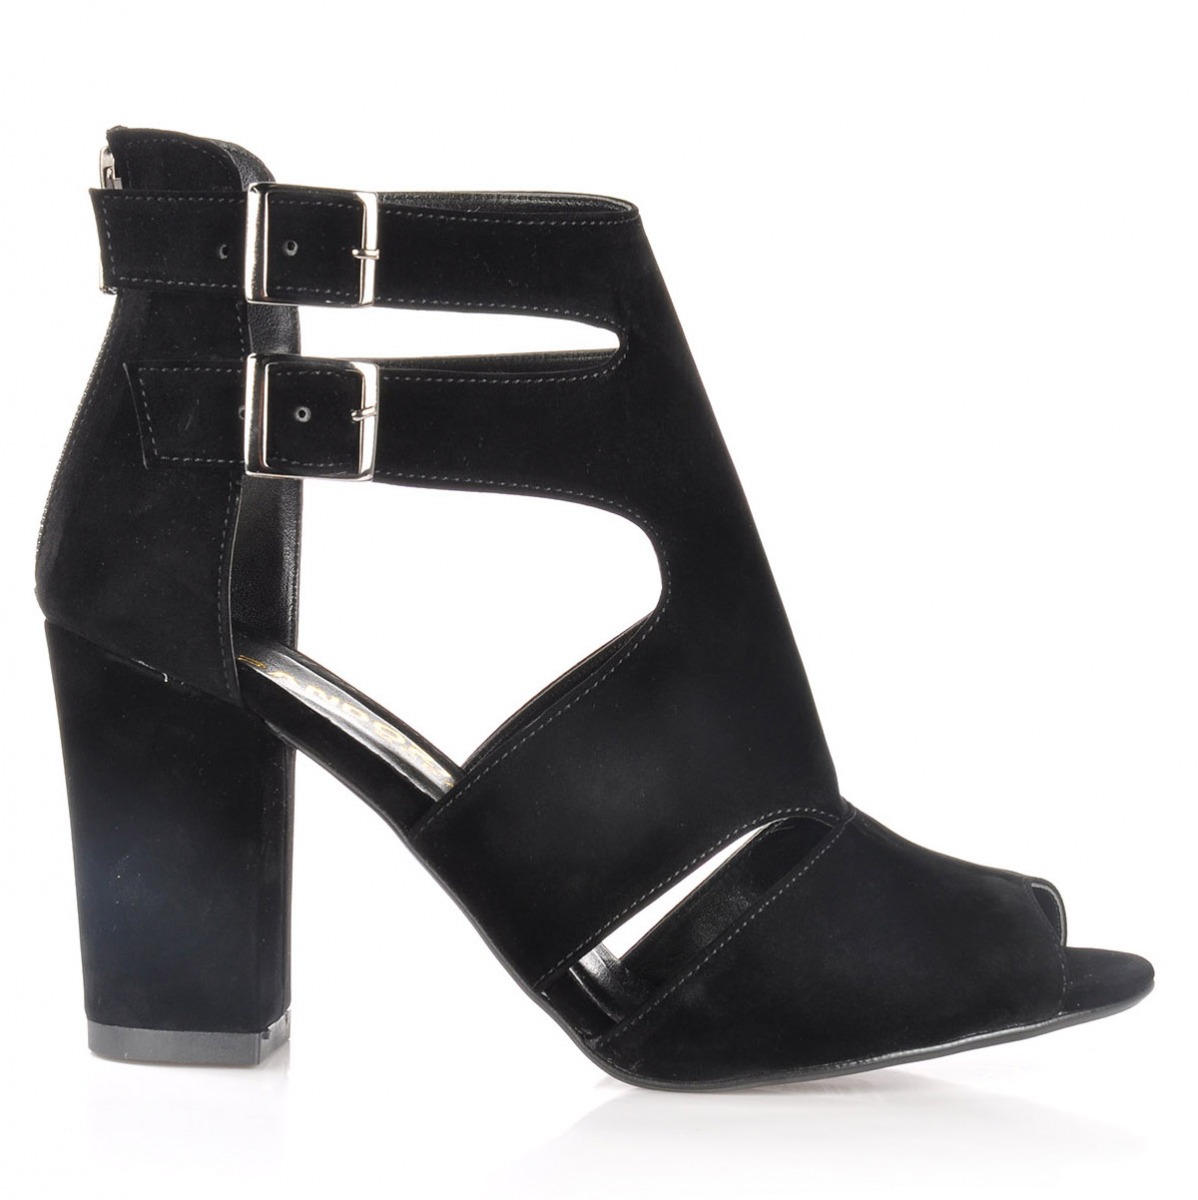 Flo Kadın  Siyah-Süet Klasik Topuklu Ayakkabı VZN-161Y. 1